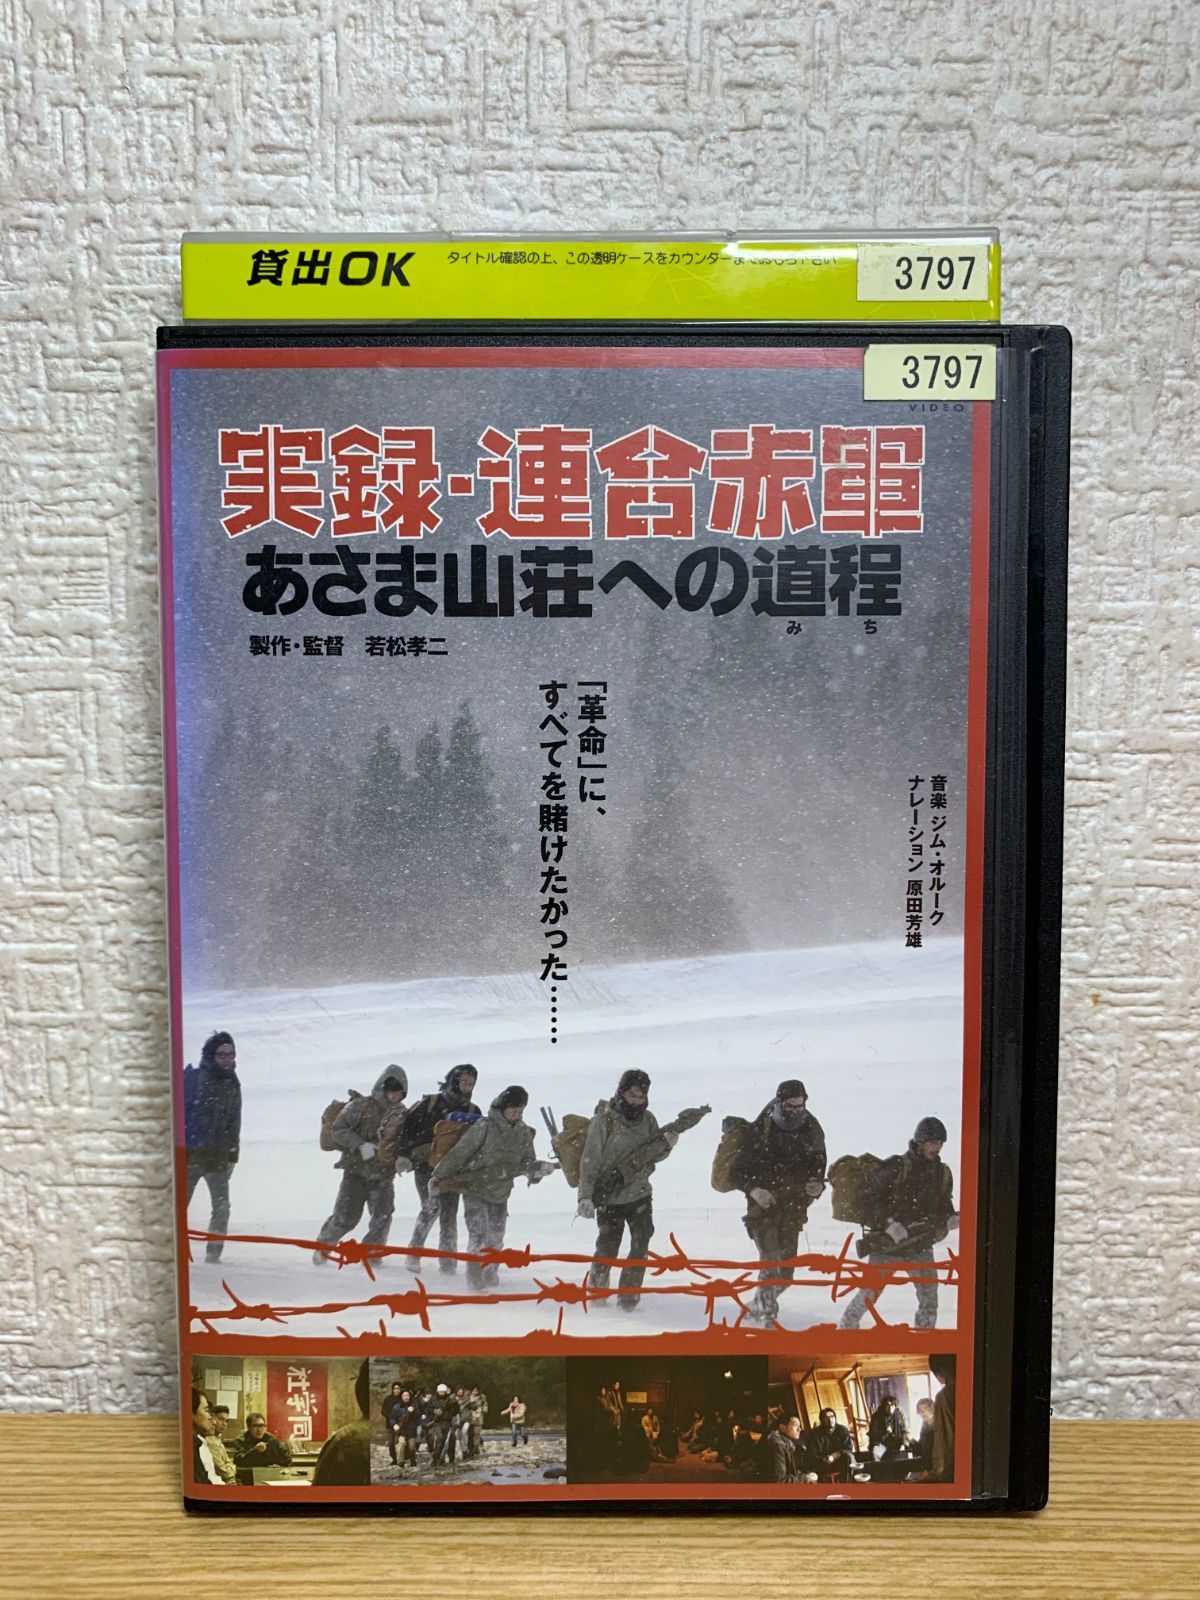 あすつく】 DVD 実録・連合赤軍 あさま山荘への道程 映画 パンフレット